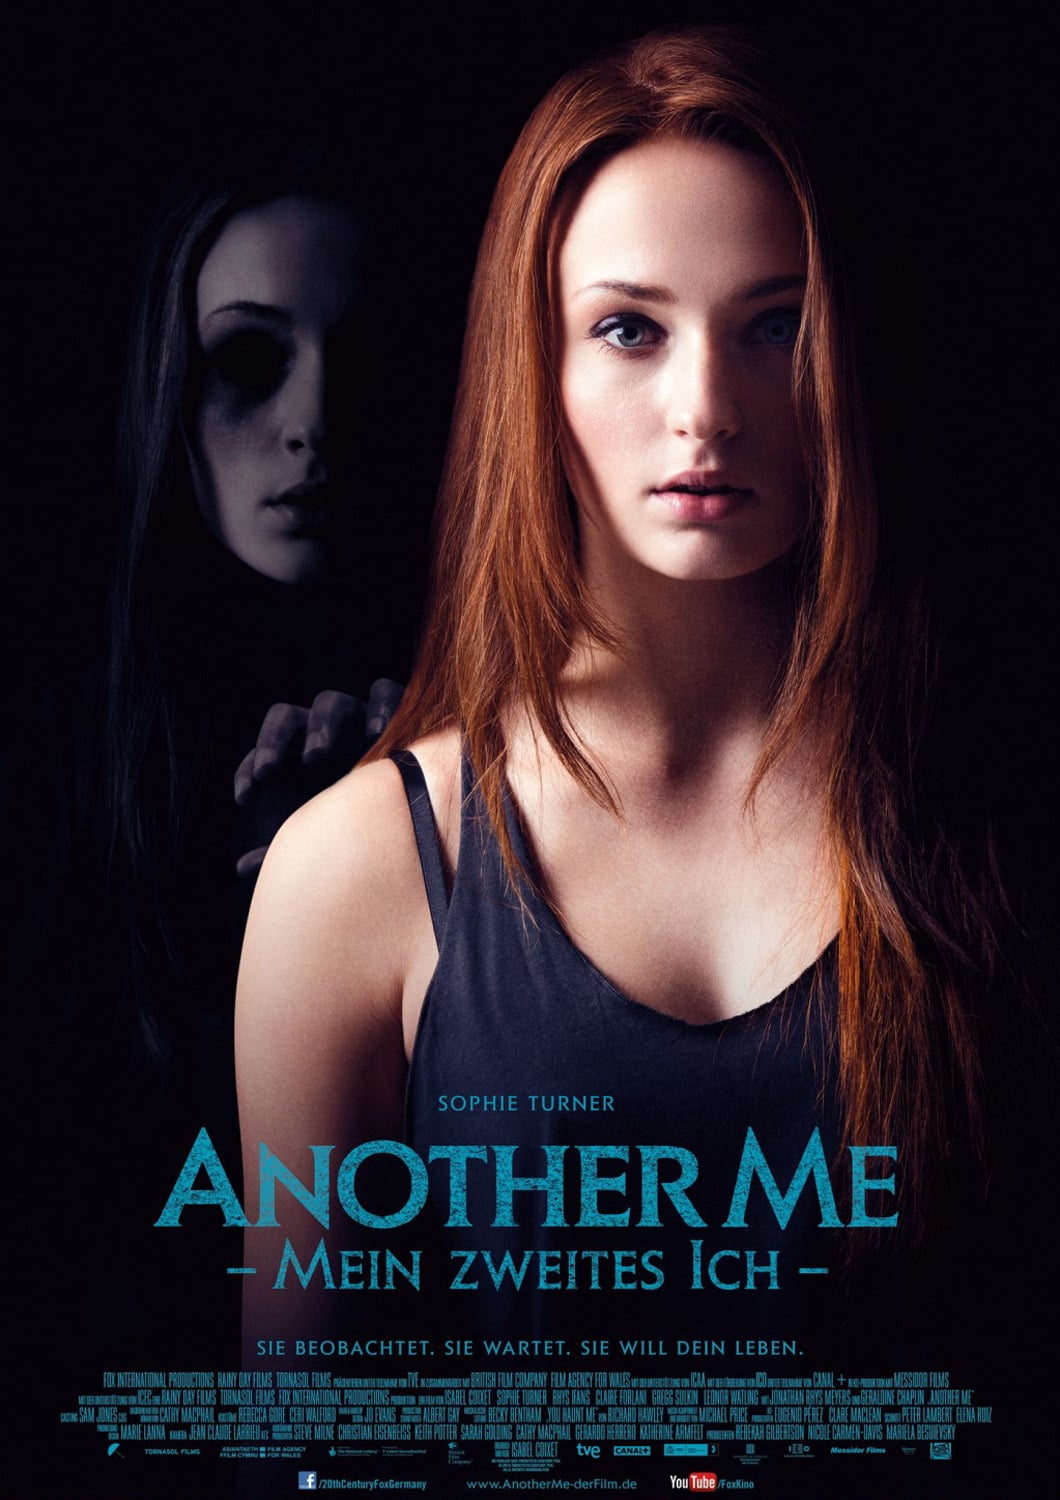 Plakat von "Another Me – Mein zweites Ich"